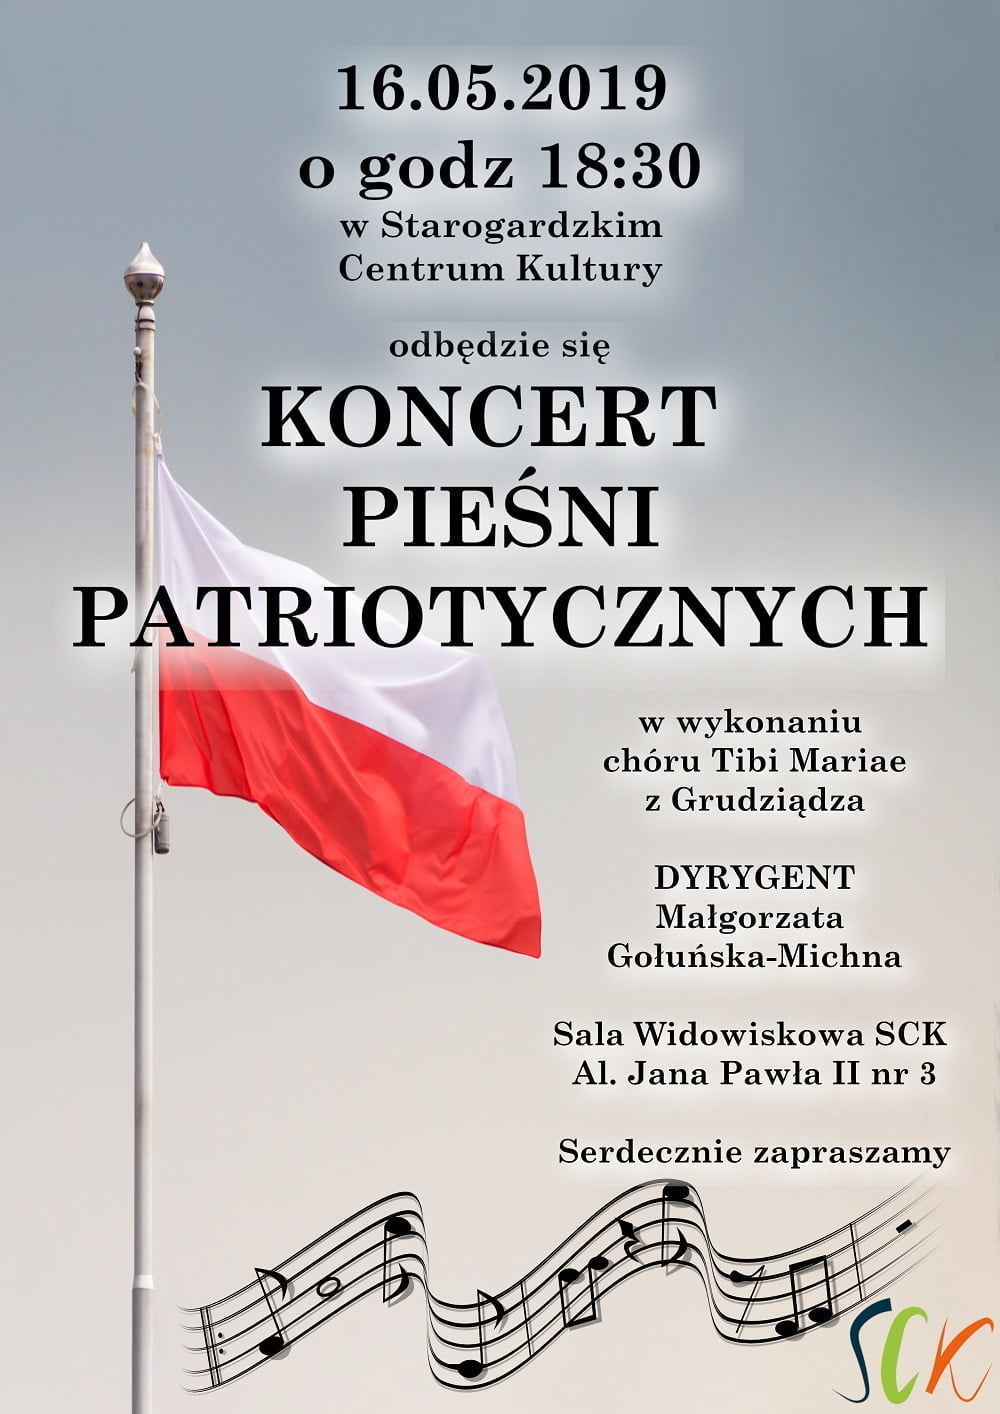 Koncert Pieśni Patriotycznych - Chór "Tibi Mariae" z Grudziądza